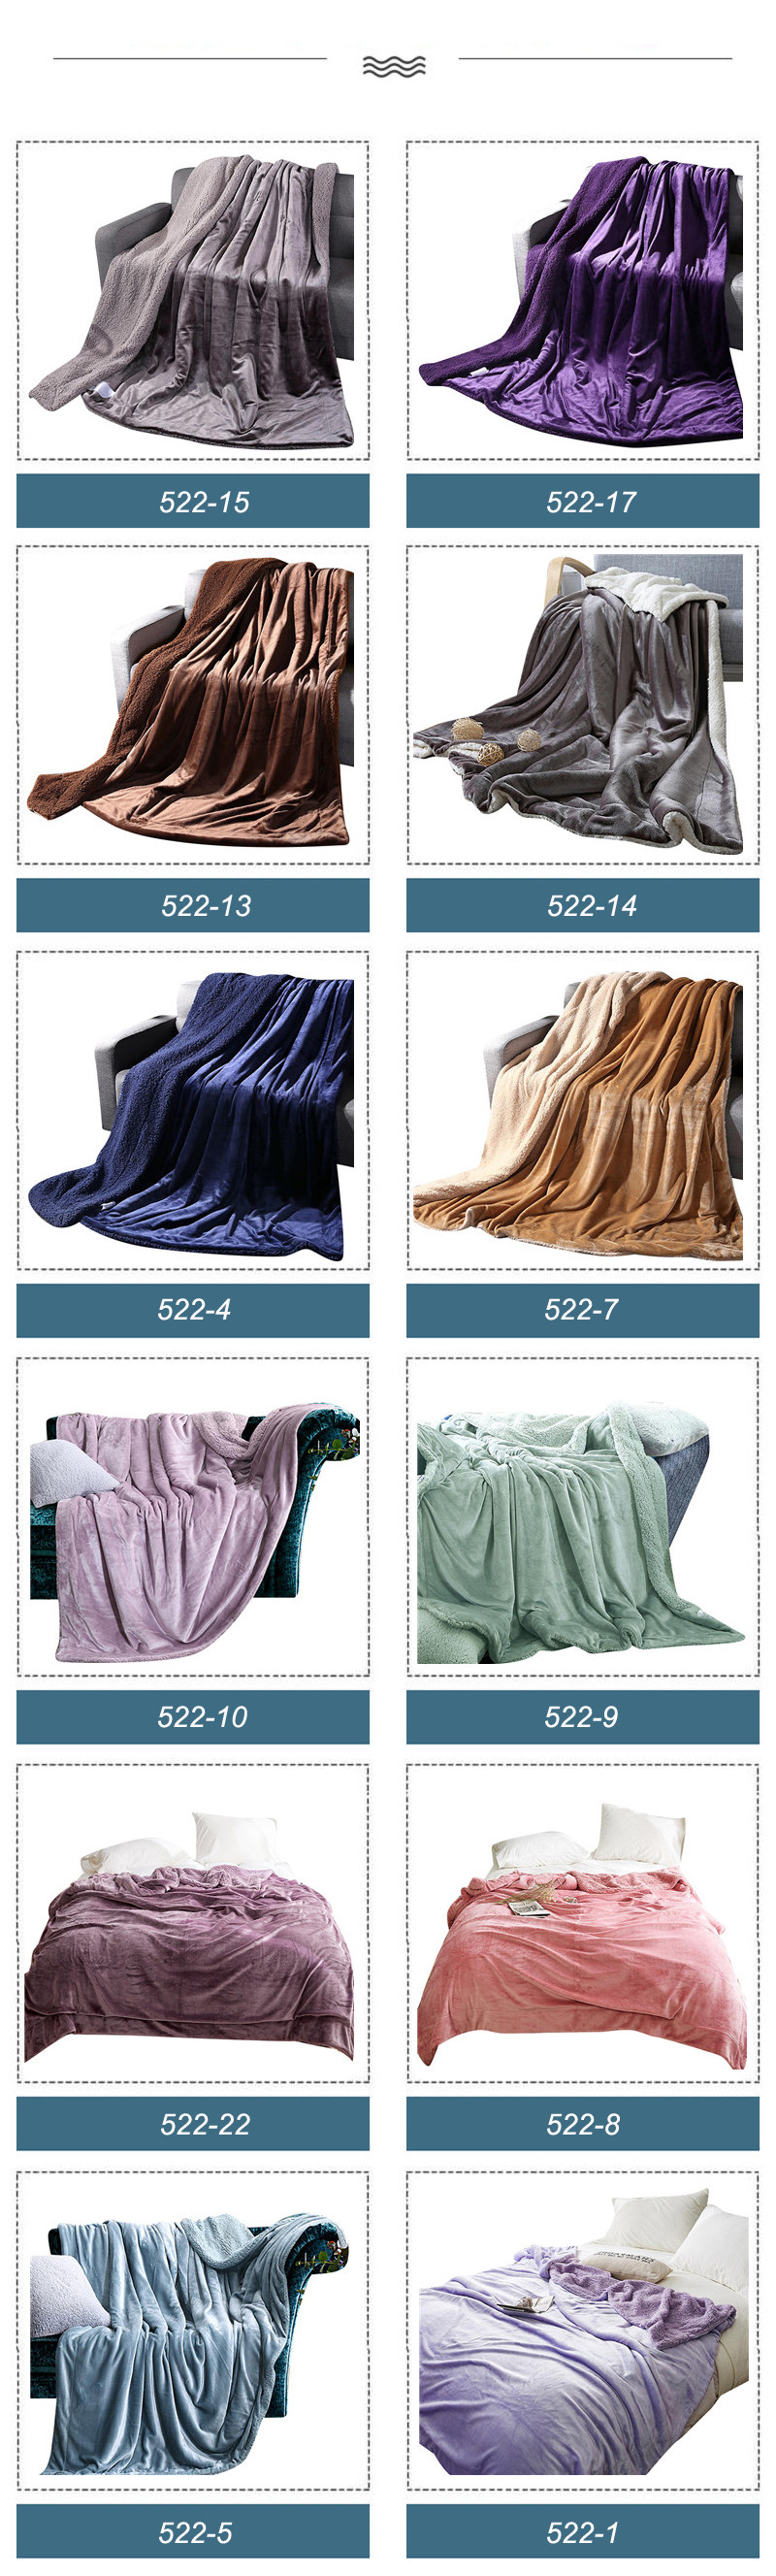 Reversible Ultra Winter Polyester Blanket